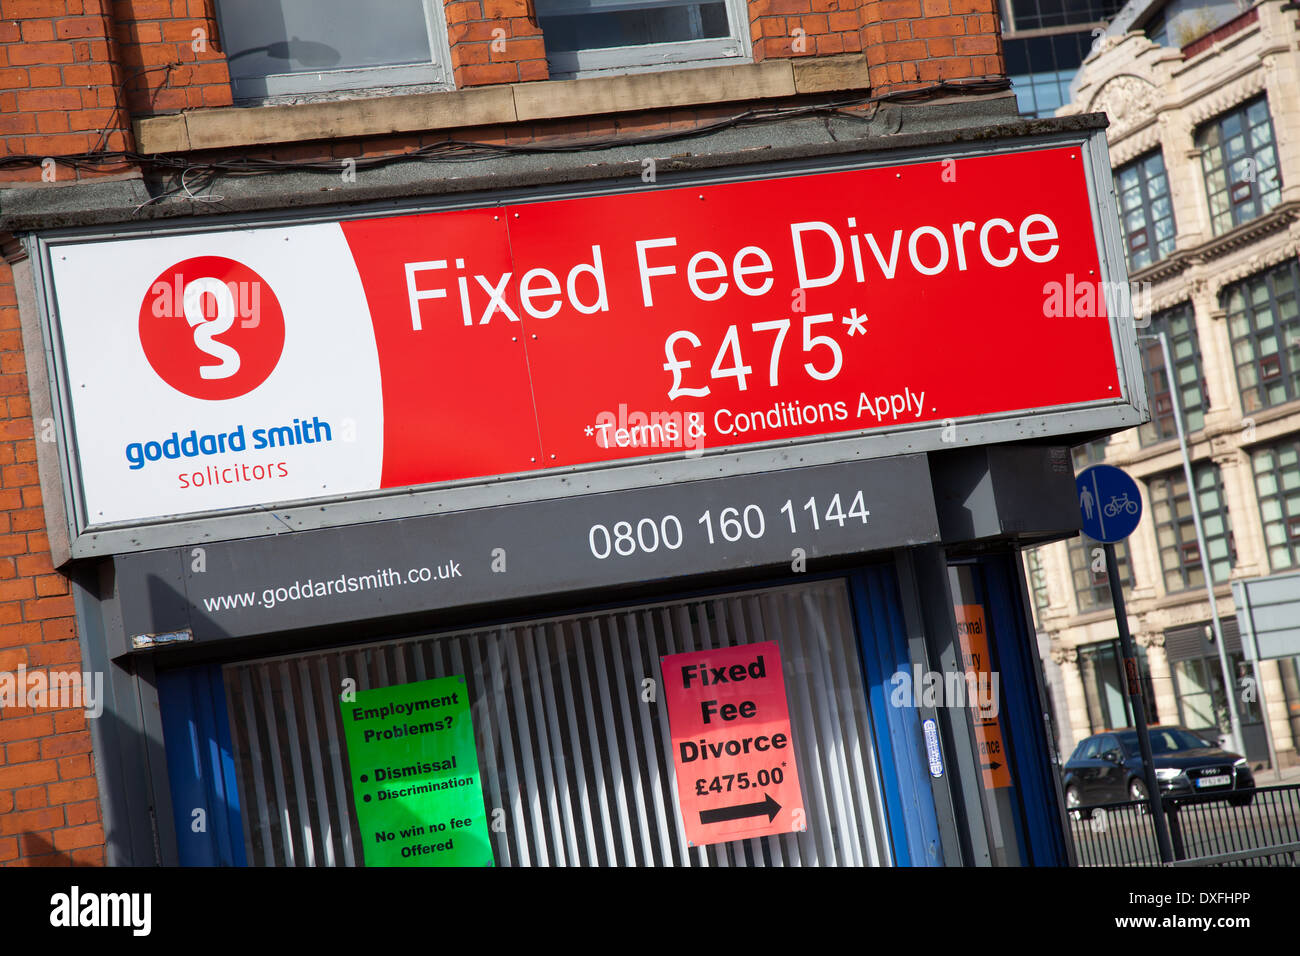 "Bewusst entkoppeln" Anwälte in Ancoats, Manchester bietet feste Gebühr Scheidung £475 Stockfoto